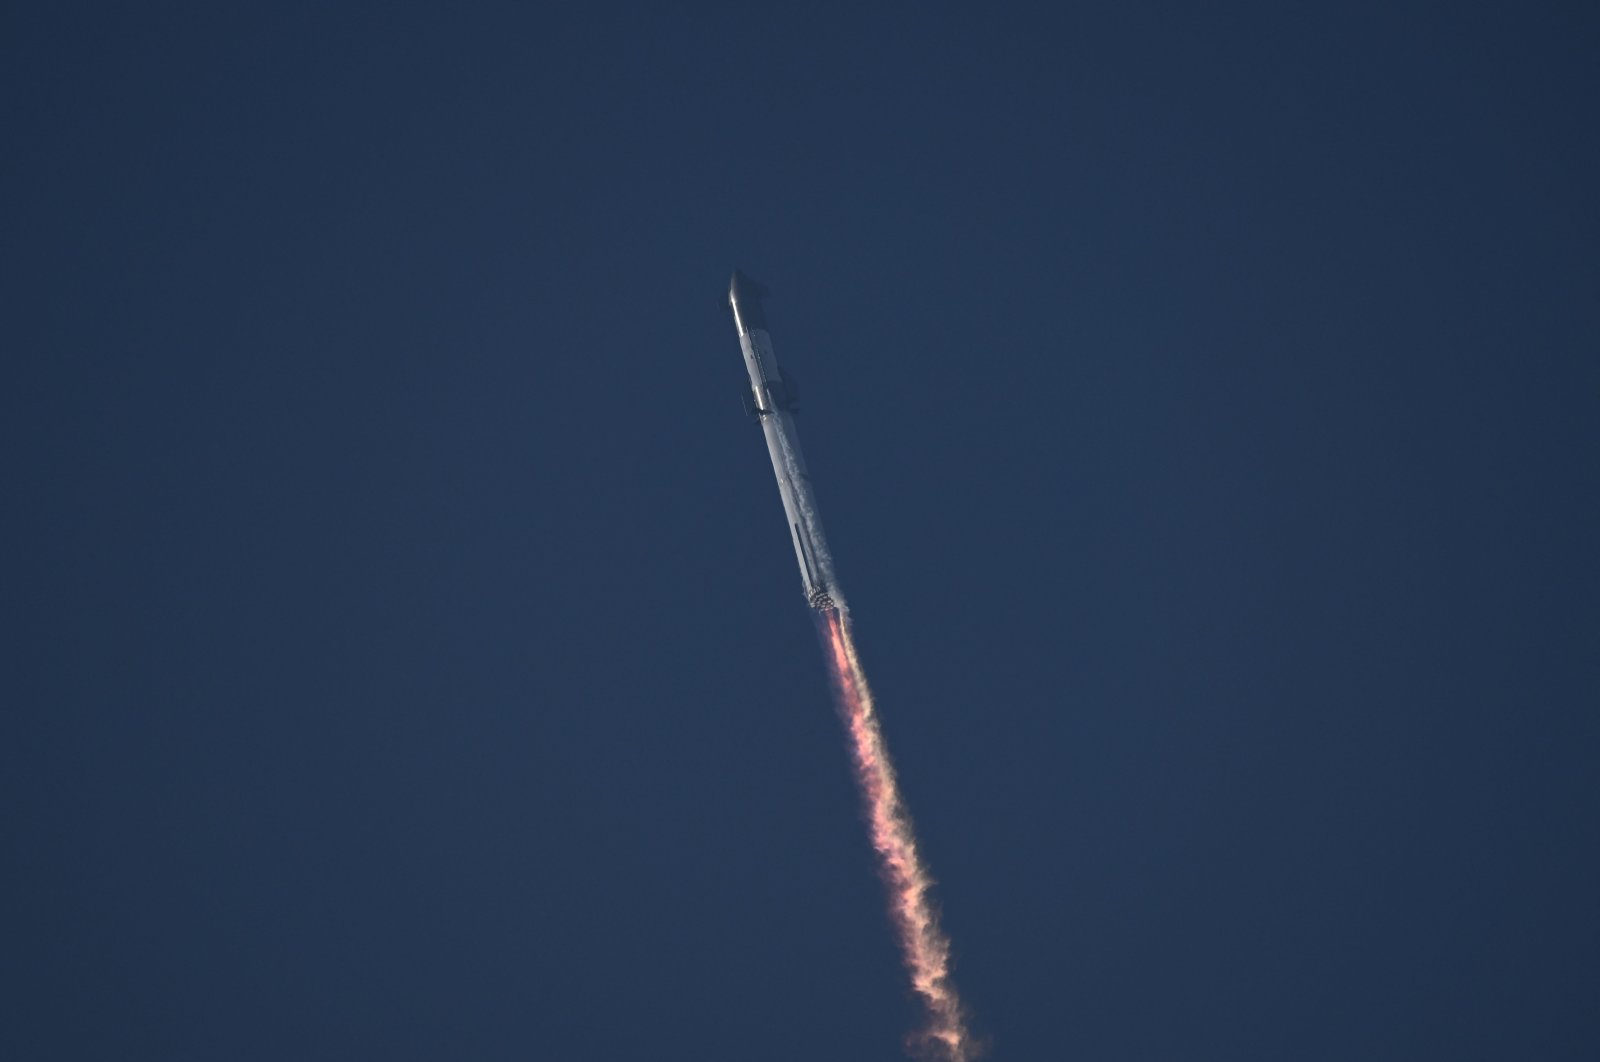 Roket terbesar di dunia, Starship milik SpaceX lepas landas tetapi meledak